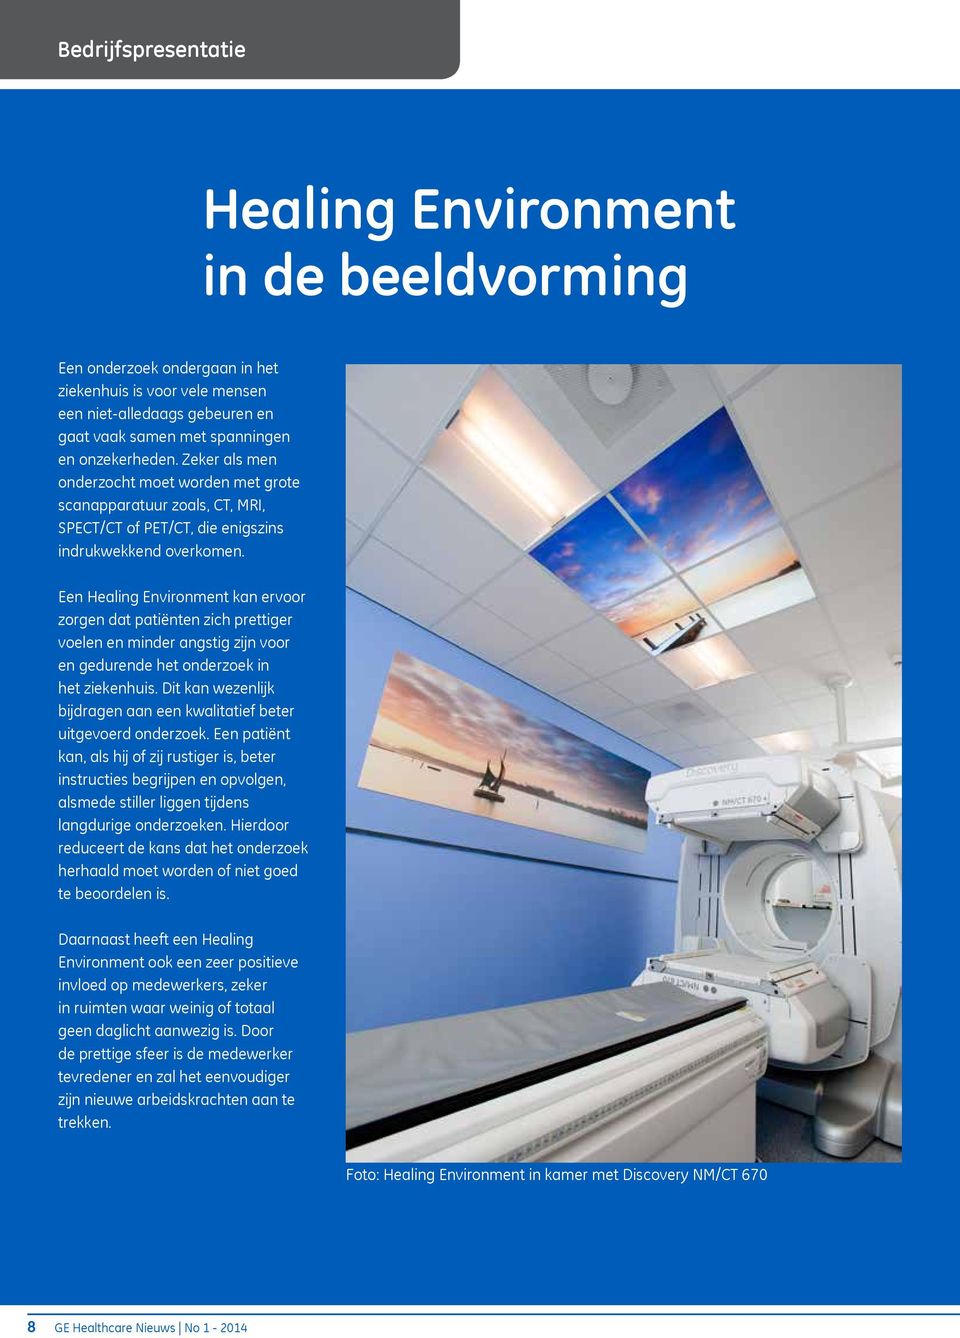 Een Healing Environment kan ervoor zorgen dat patiënten zich prettiger voelen en minder angstig zijn voor en gedurende het onderzoek in het ziekenhuis.